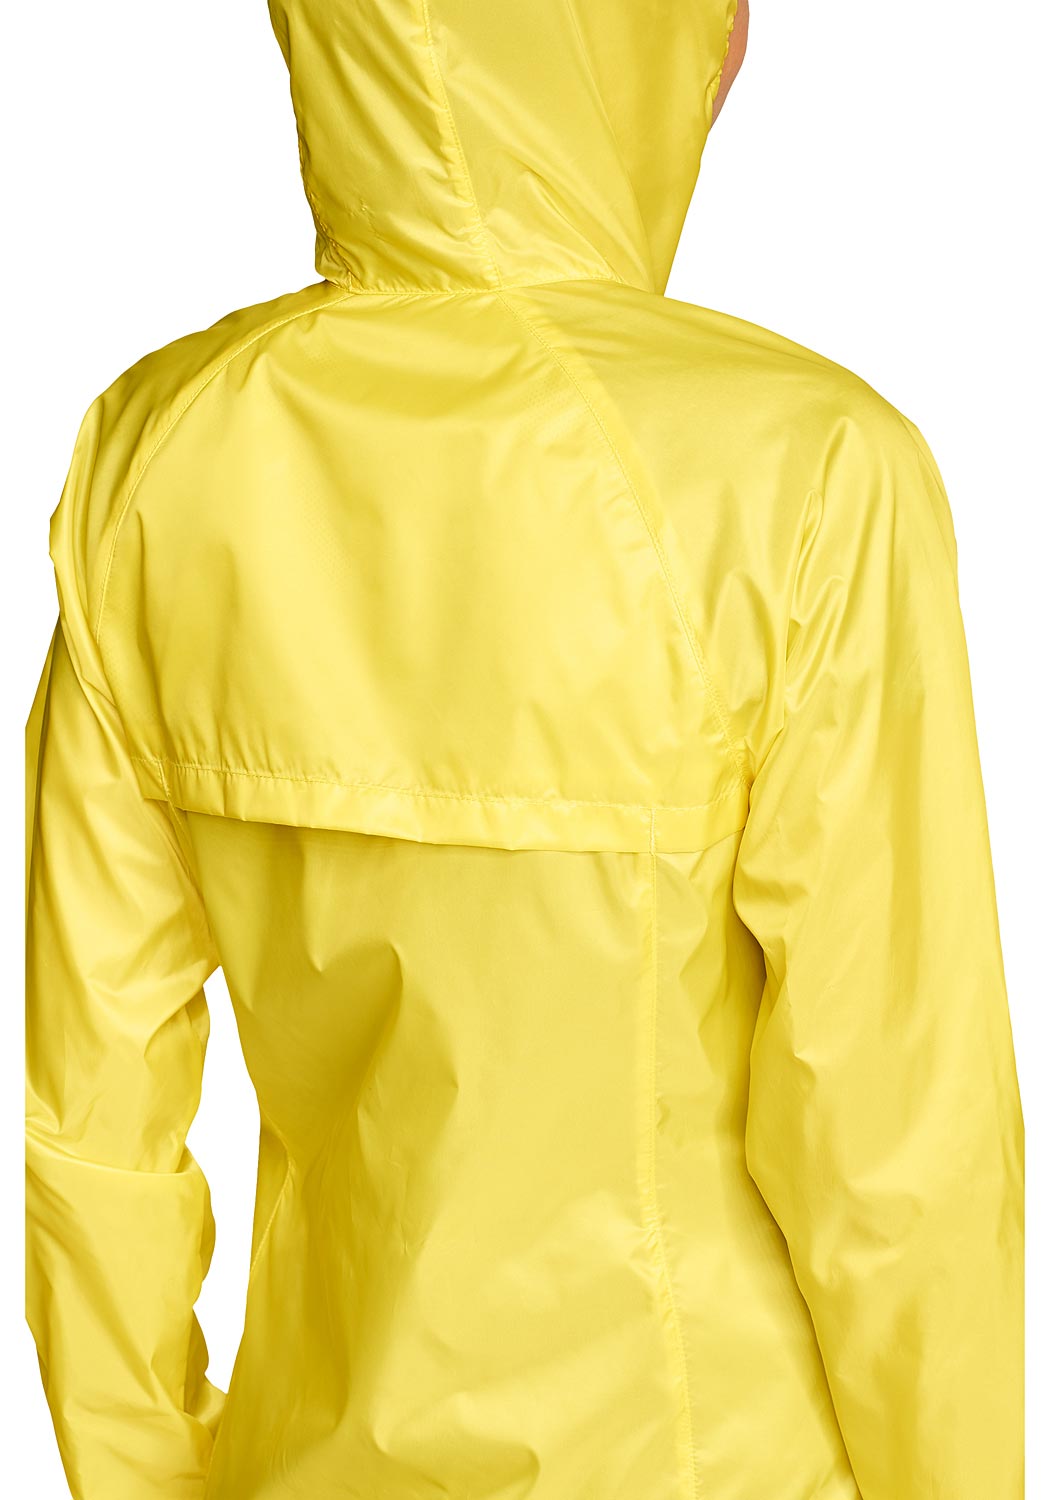 Artikel klicken und genauer betrachten! - Solarfoil Jacke Damen Gelb Gr. XS Die Solarfoil Jacke ist der perfekte Begleiter zum Wandern und Reisen - sie schützt Sie sowohl bei gutem als auch bei schlechtem Wetter!. | im Online Shop kaufen